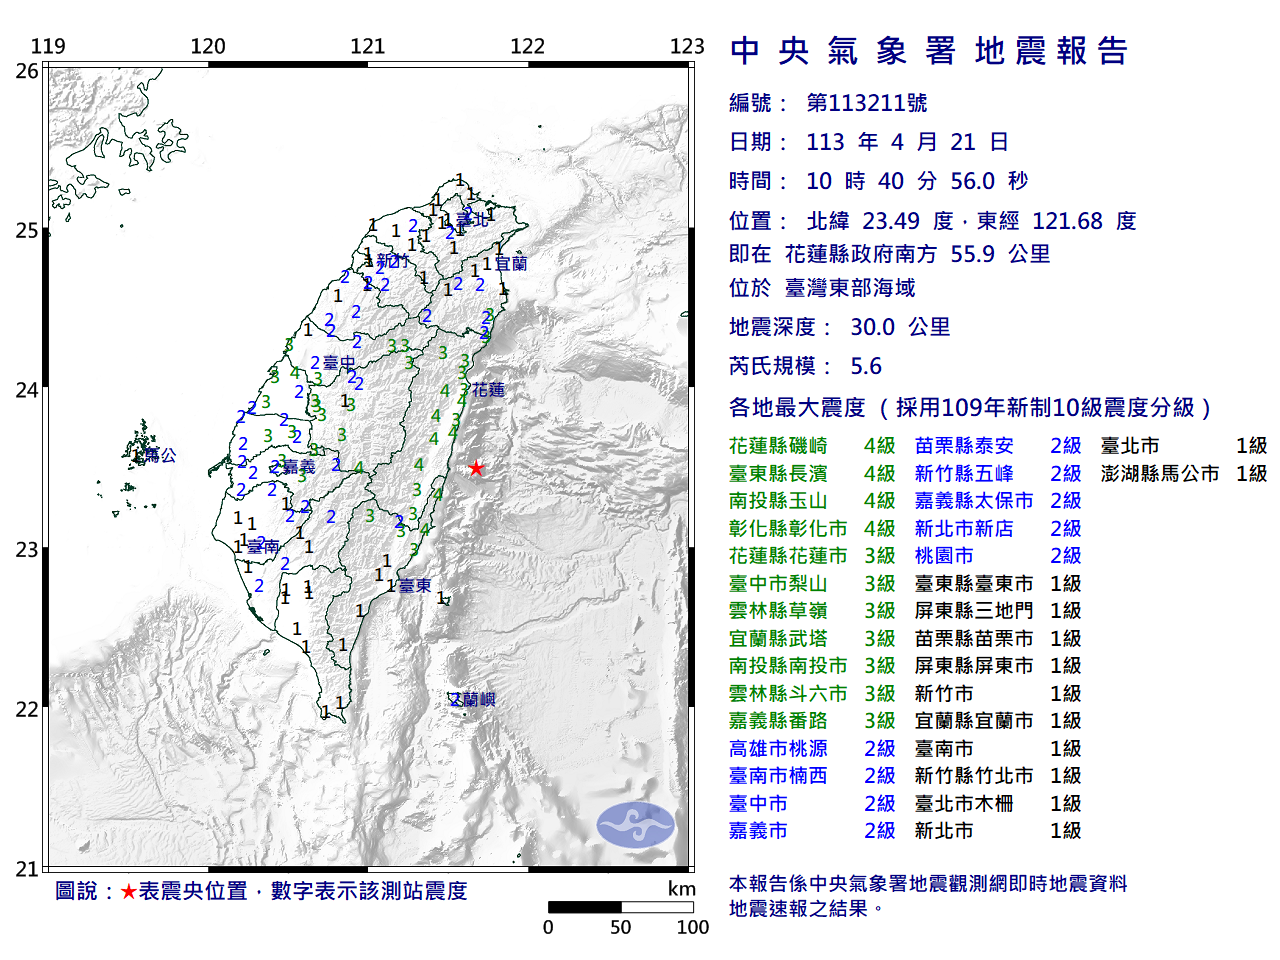 10:40台灣東部海域有感地震 花東震度4級以上